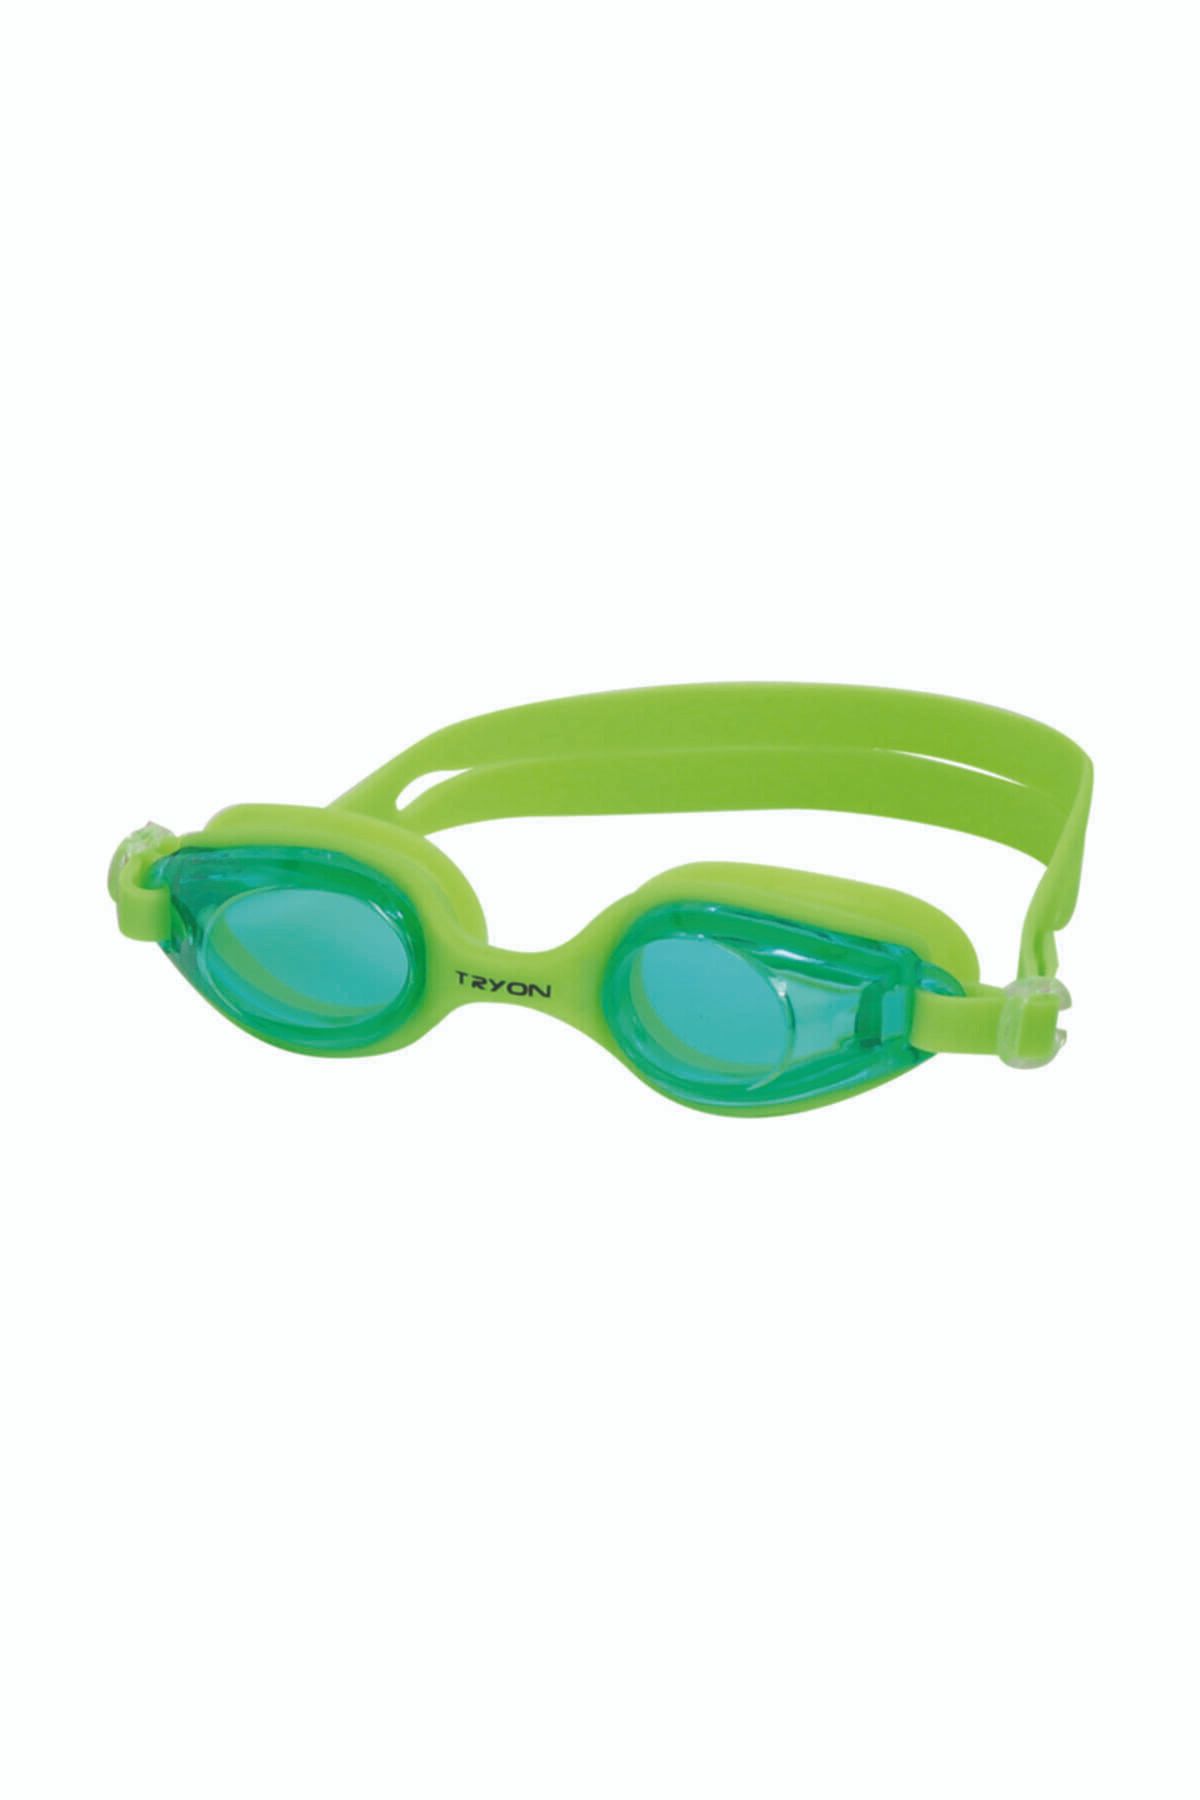 TRYON Unisex Çocuk Yeşil Yüzücü Gözlüğü Yg-2030